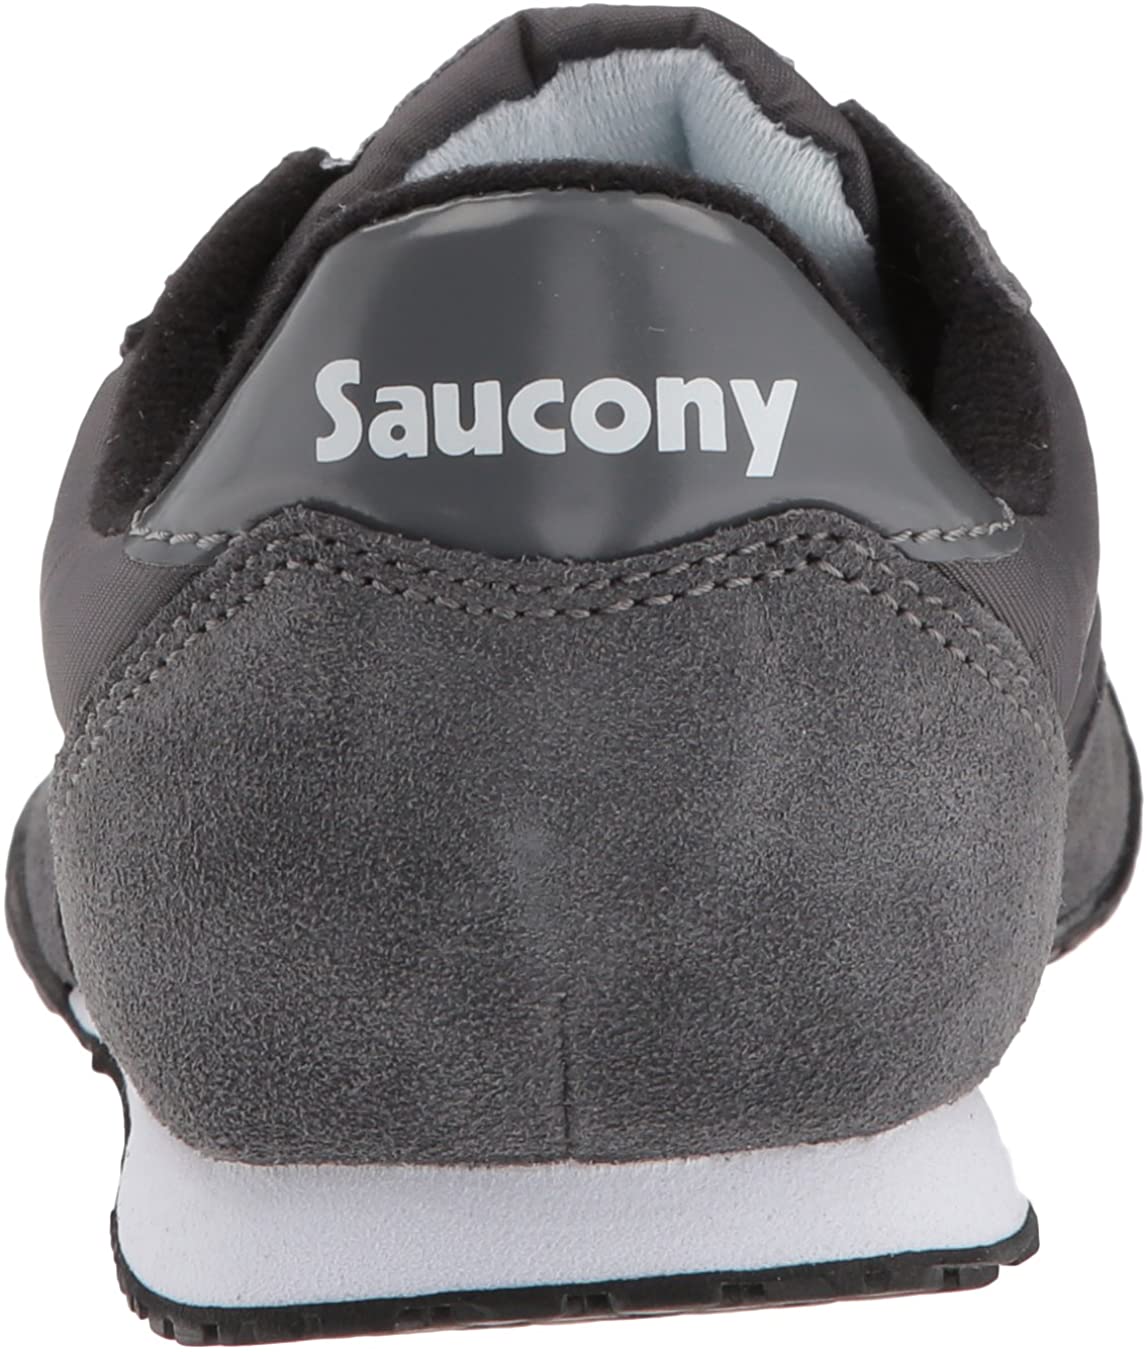 Saucony Originals Mens Bullet Classic Sneaker,Black/Grey,9.5 M US 